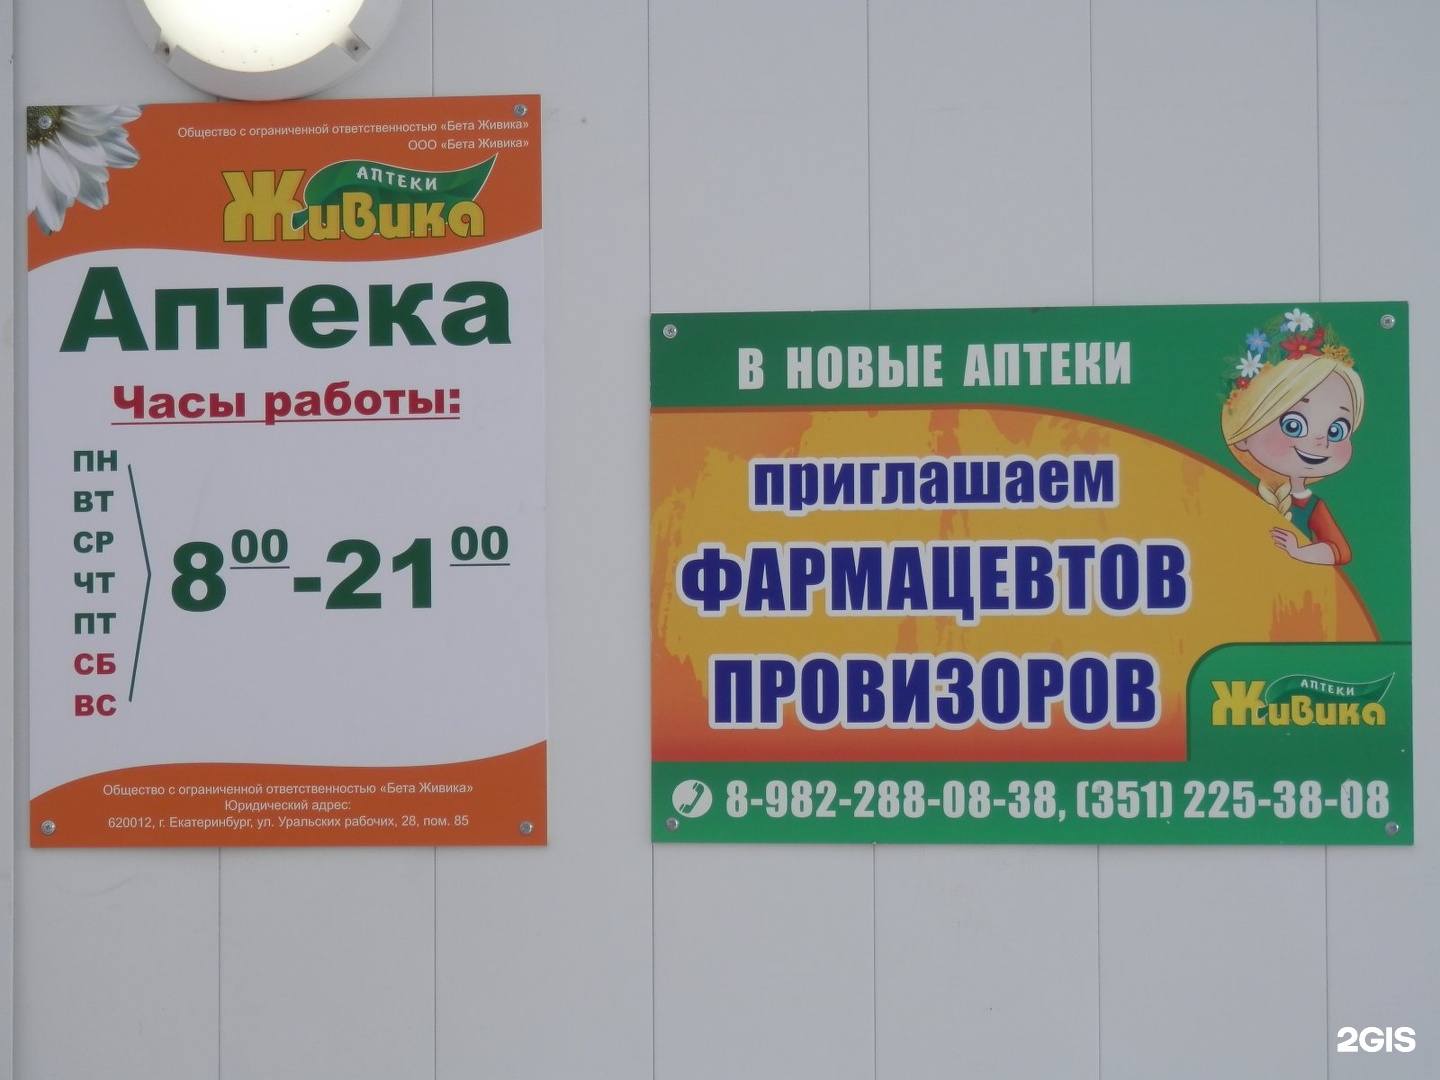 Аптека Живика В Омске